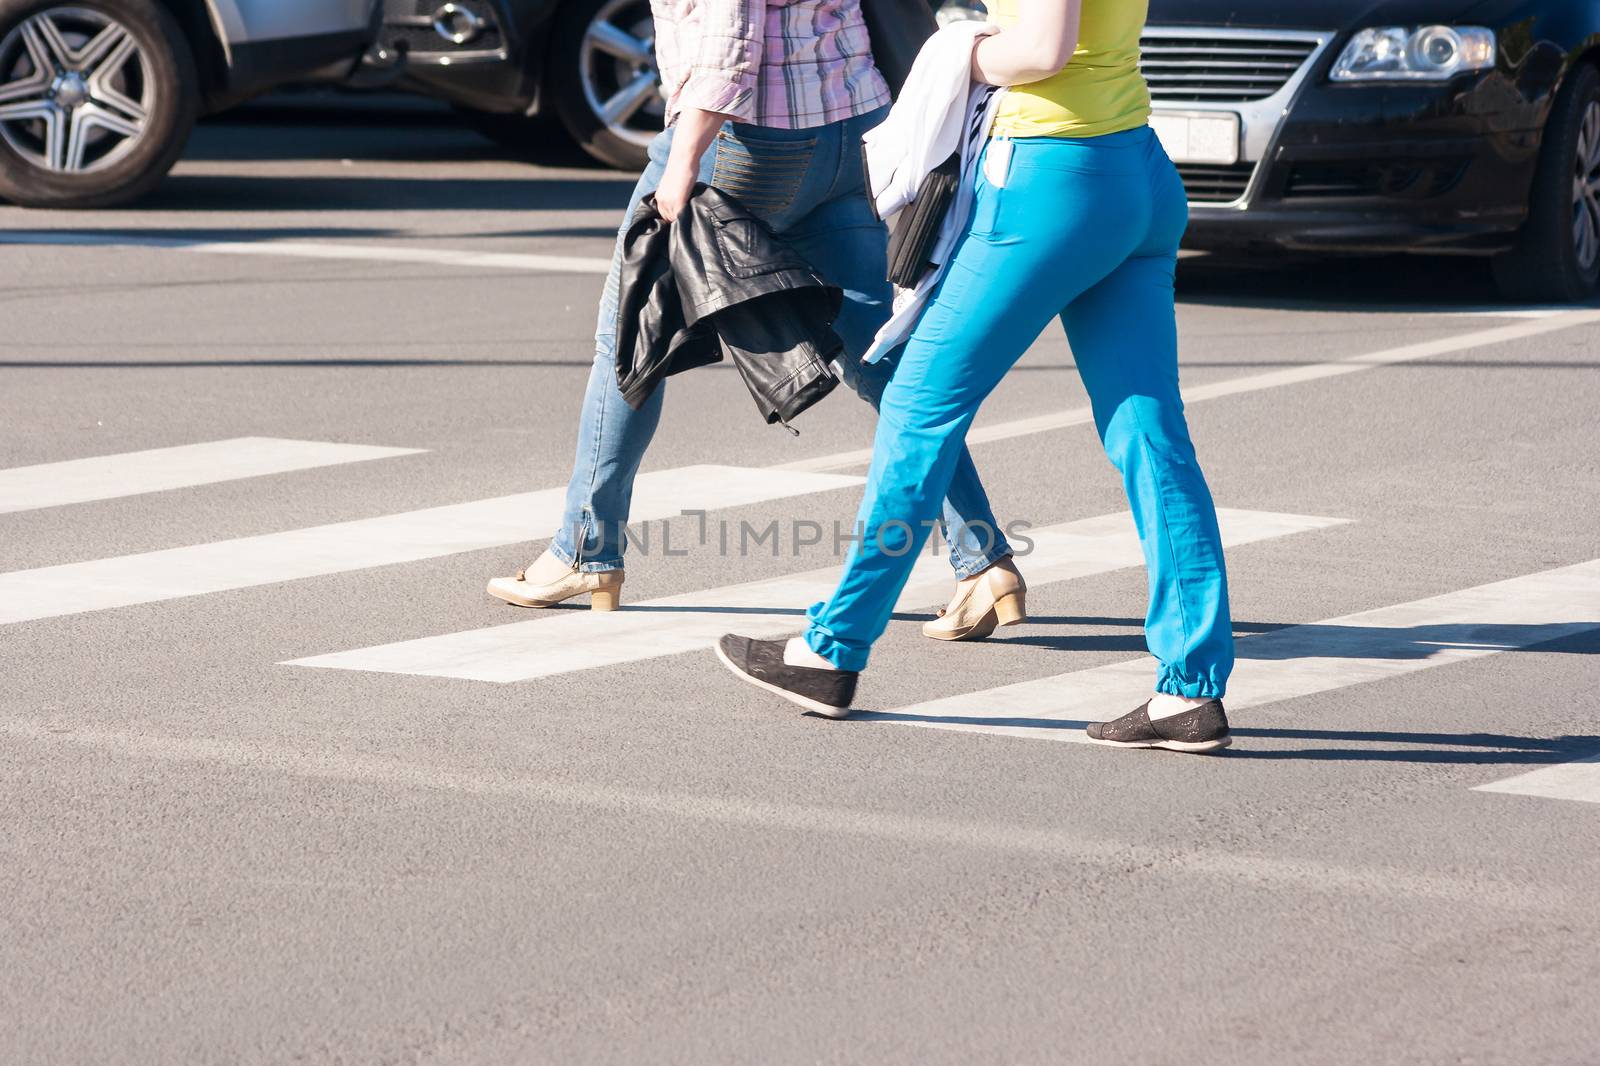 pedestrians walking on a crosswalk by raddnatt